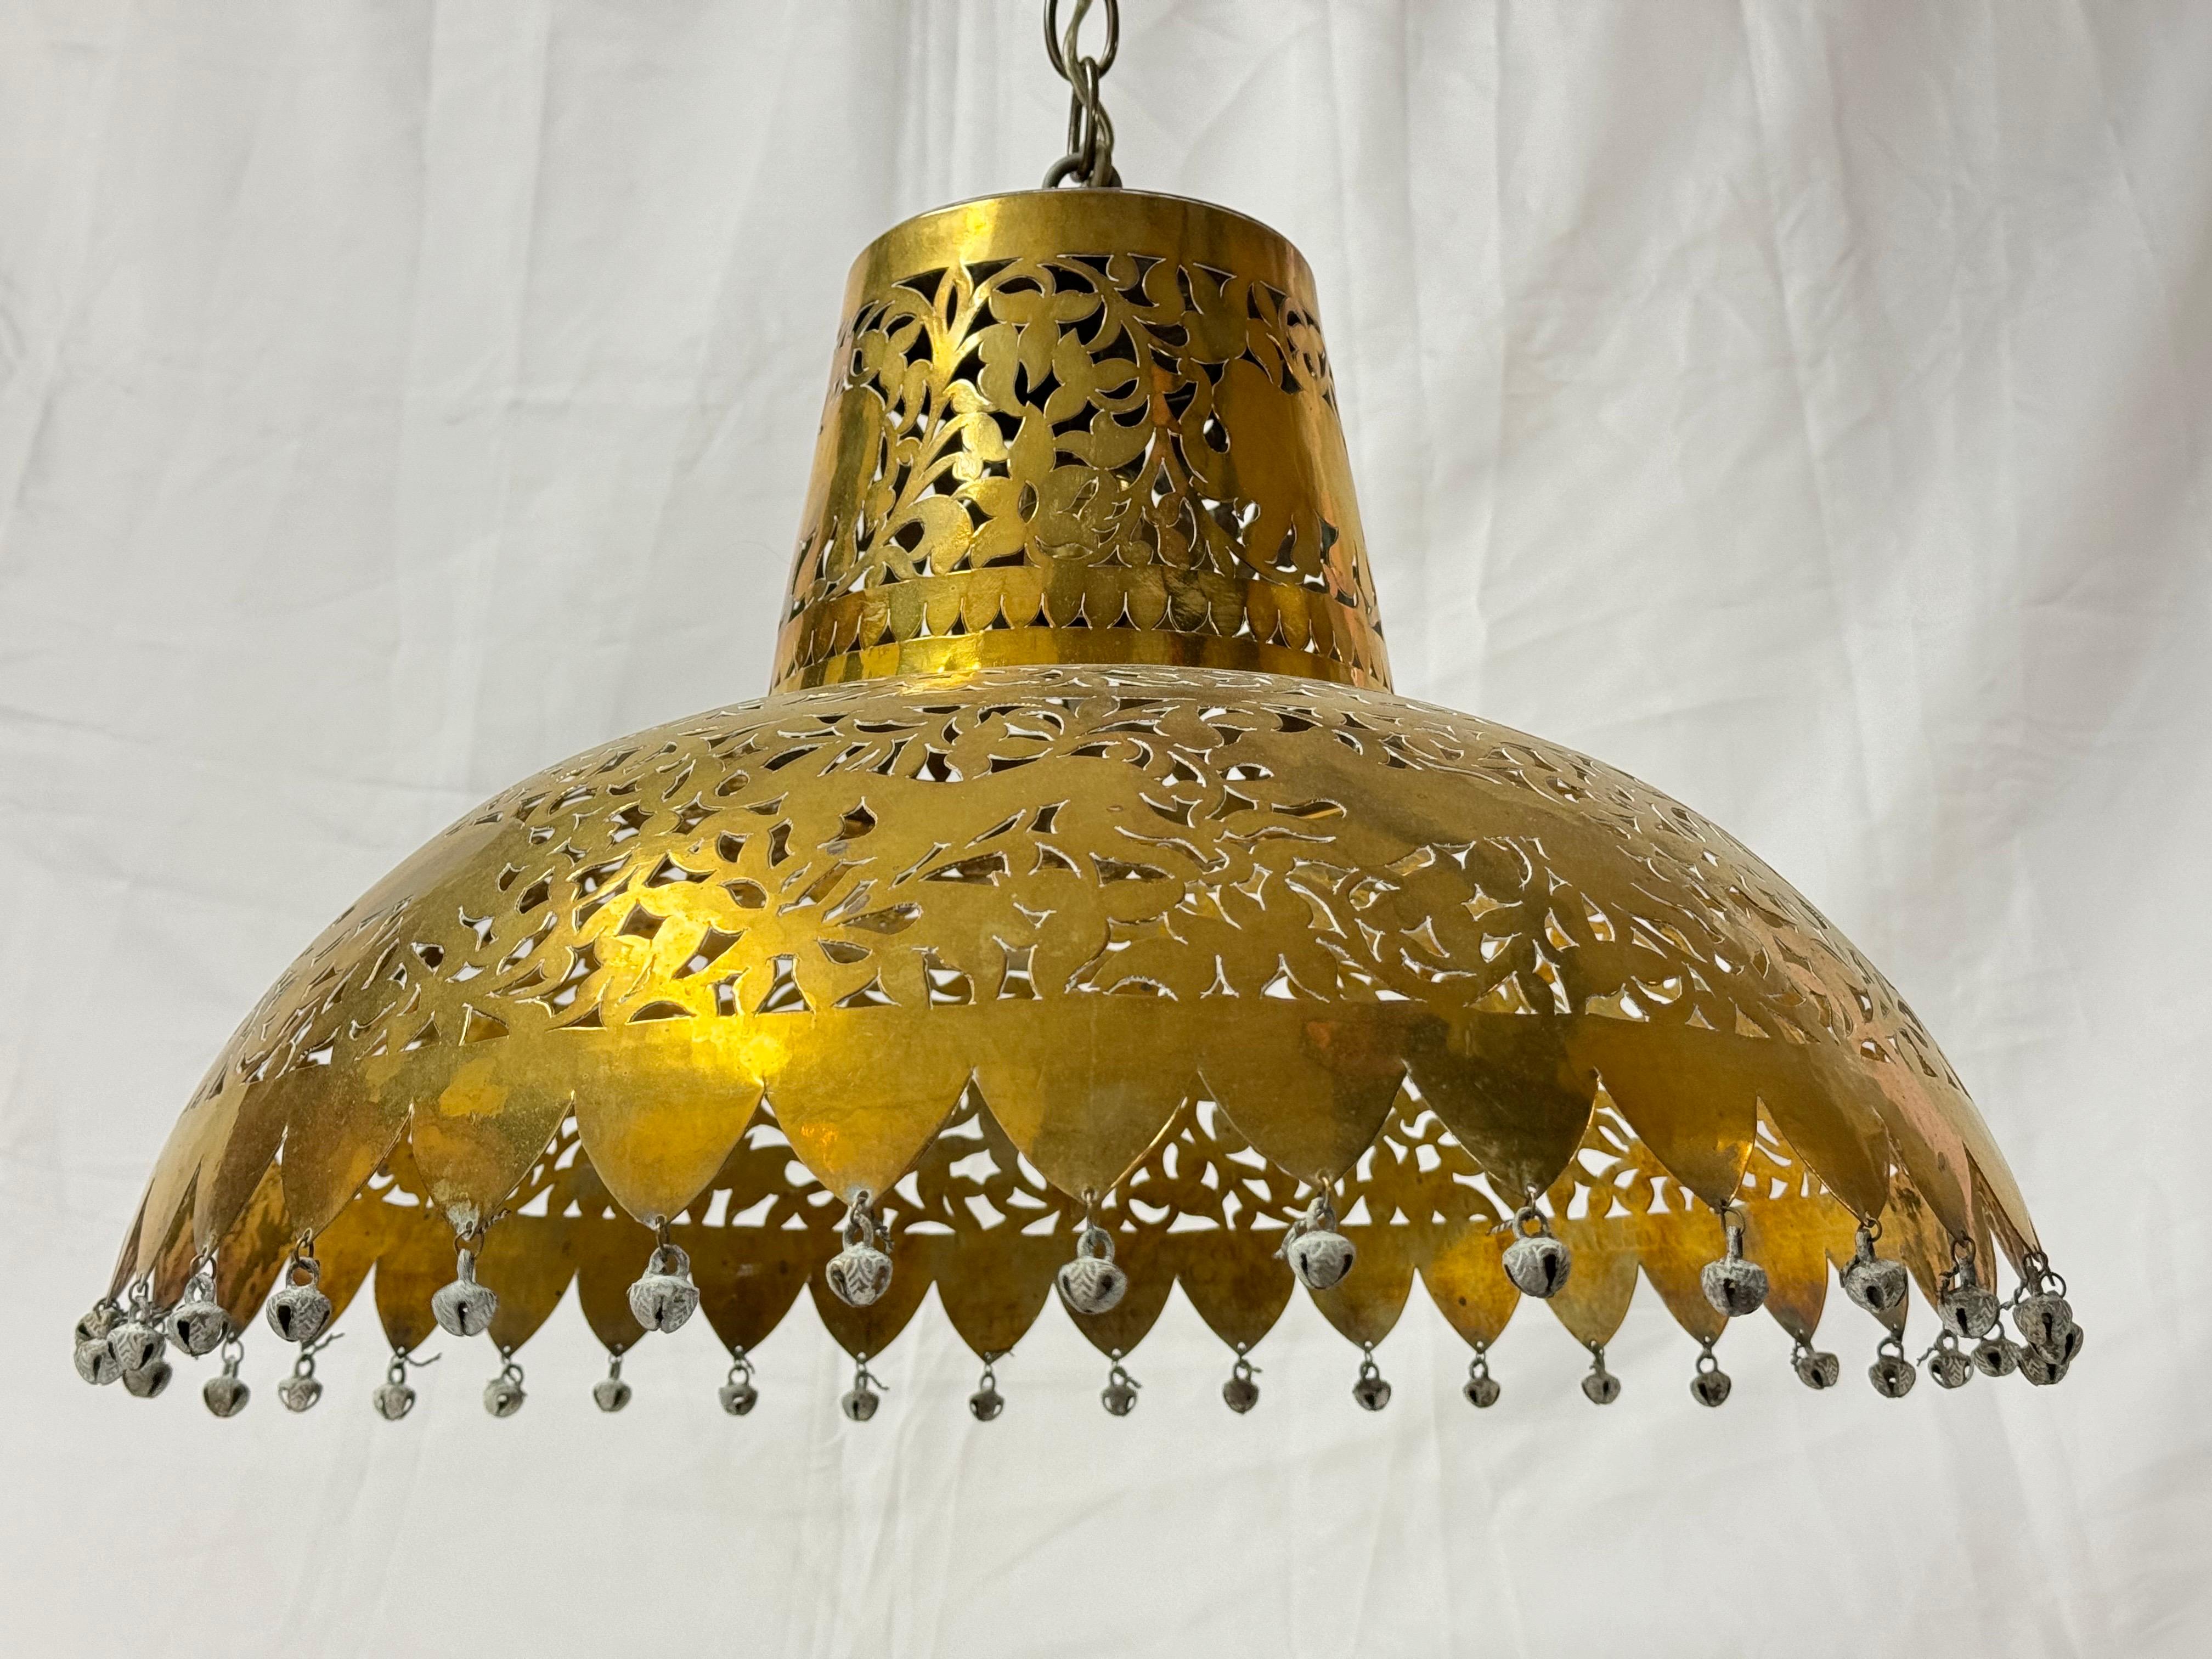  Marokkanischer Kronleuchter aus durchbrochenem Messing. Exotische Pendelleuchte mit Glocken als Verzierungen am äußeren Kreis. Aufwendig geschnitzte Tierfiguren, durch die das Licht reflektiert wird, machen diese Leuchte zu einem magischen